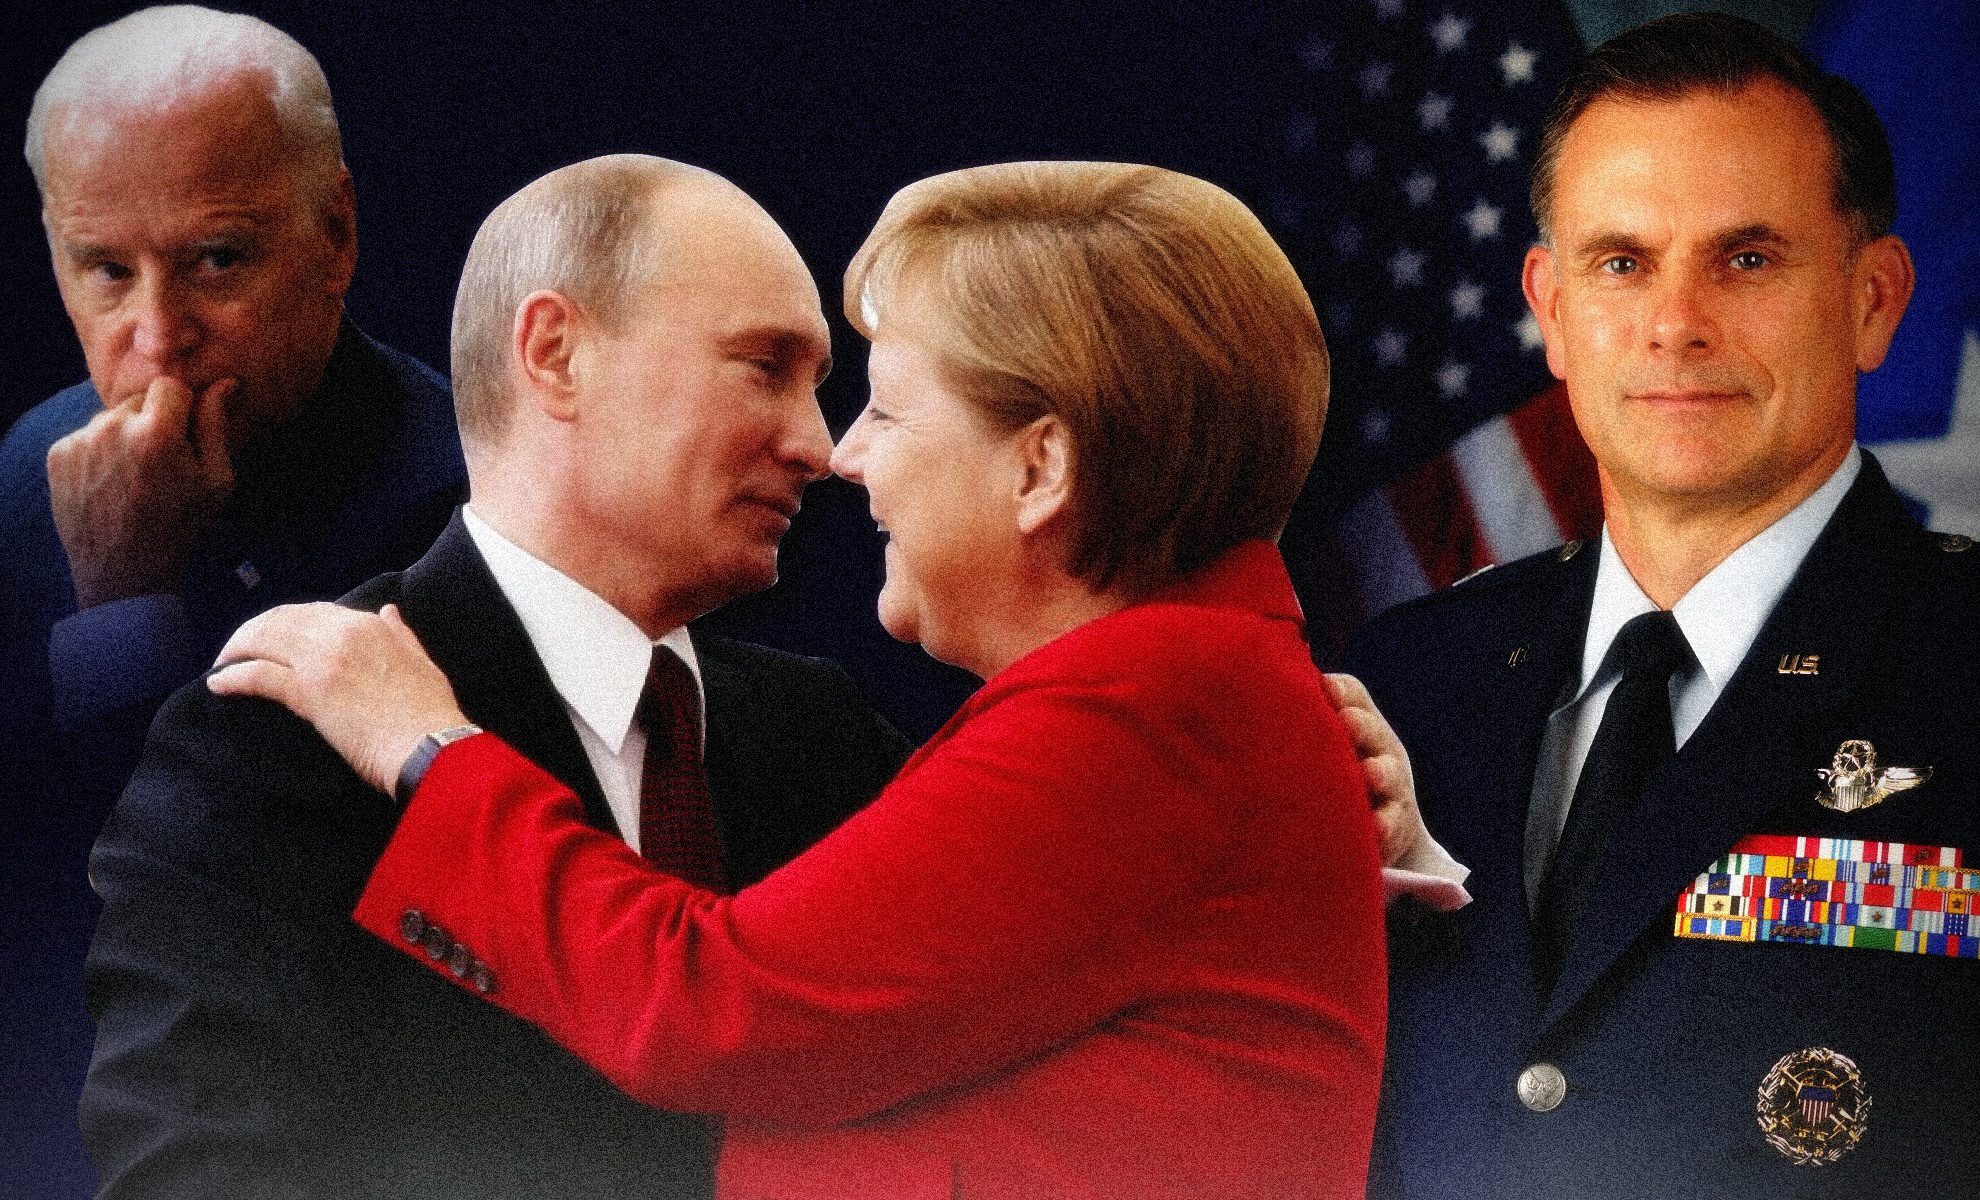 Gen. Spalding: Dlaczego Biden zgodził się, by Niemcy i Rosja dokończyły Nord Stream 2?